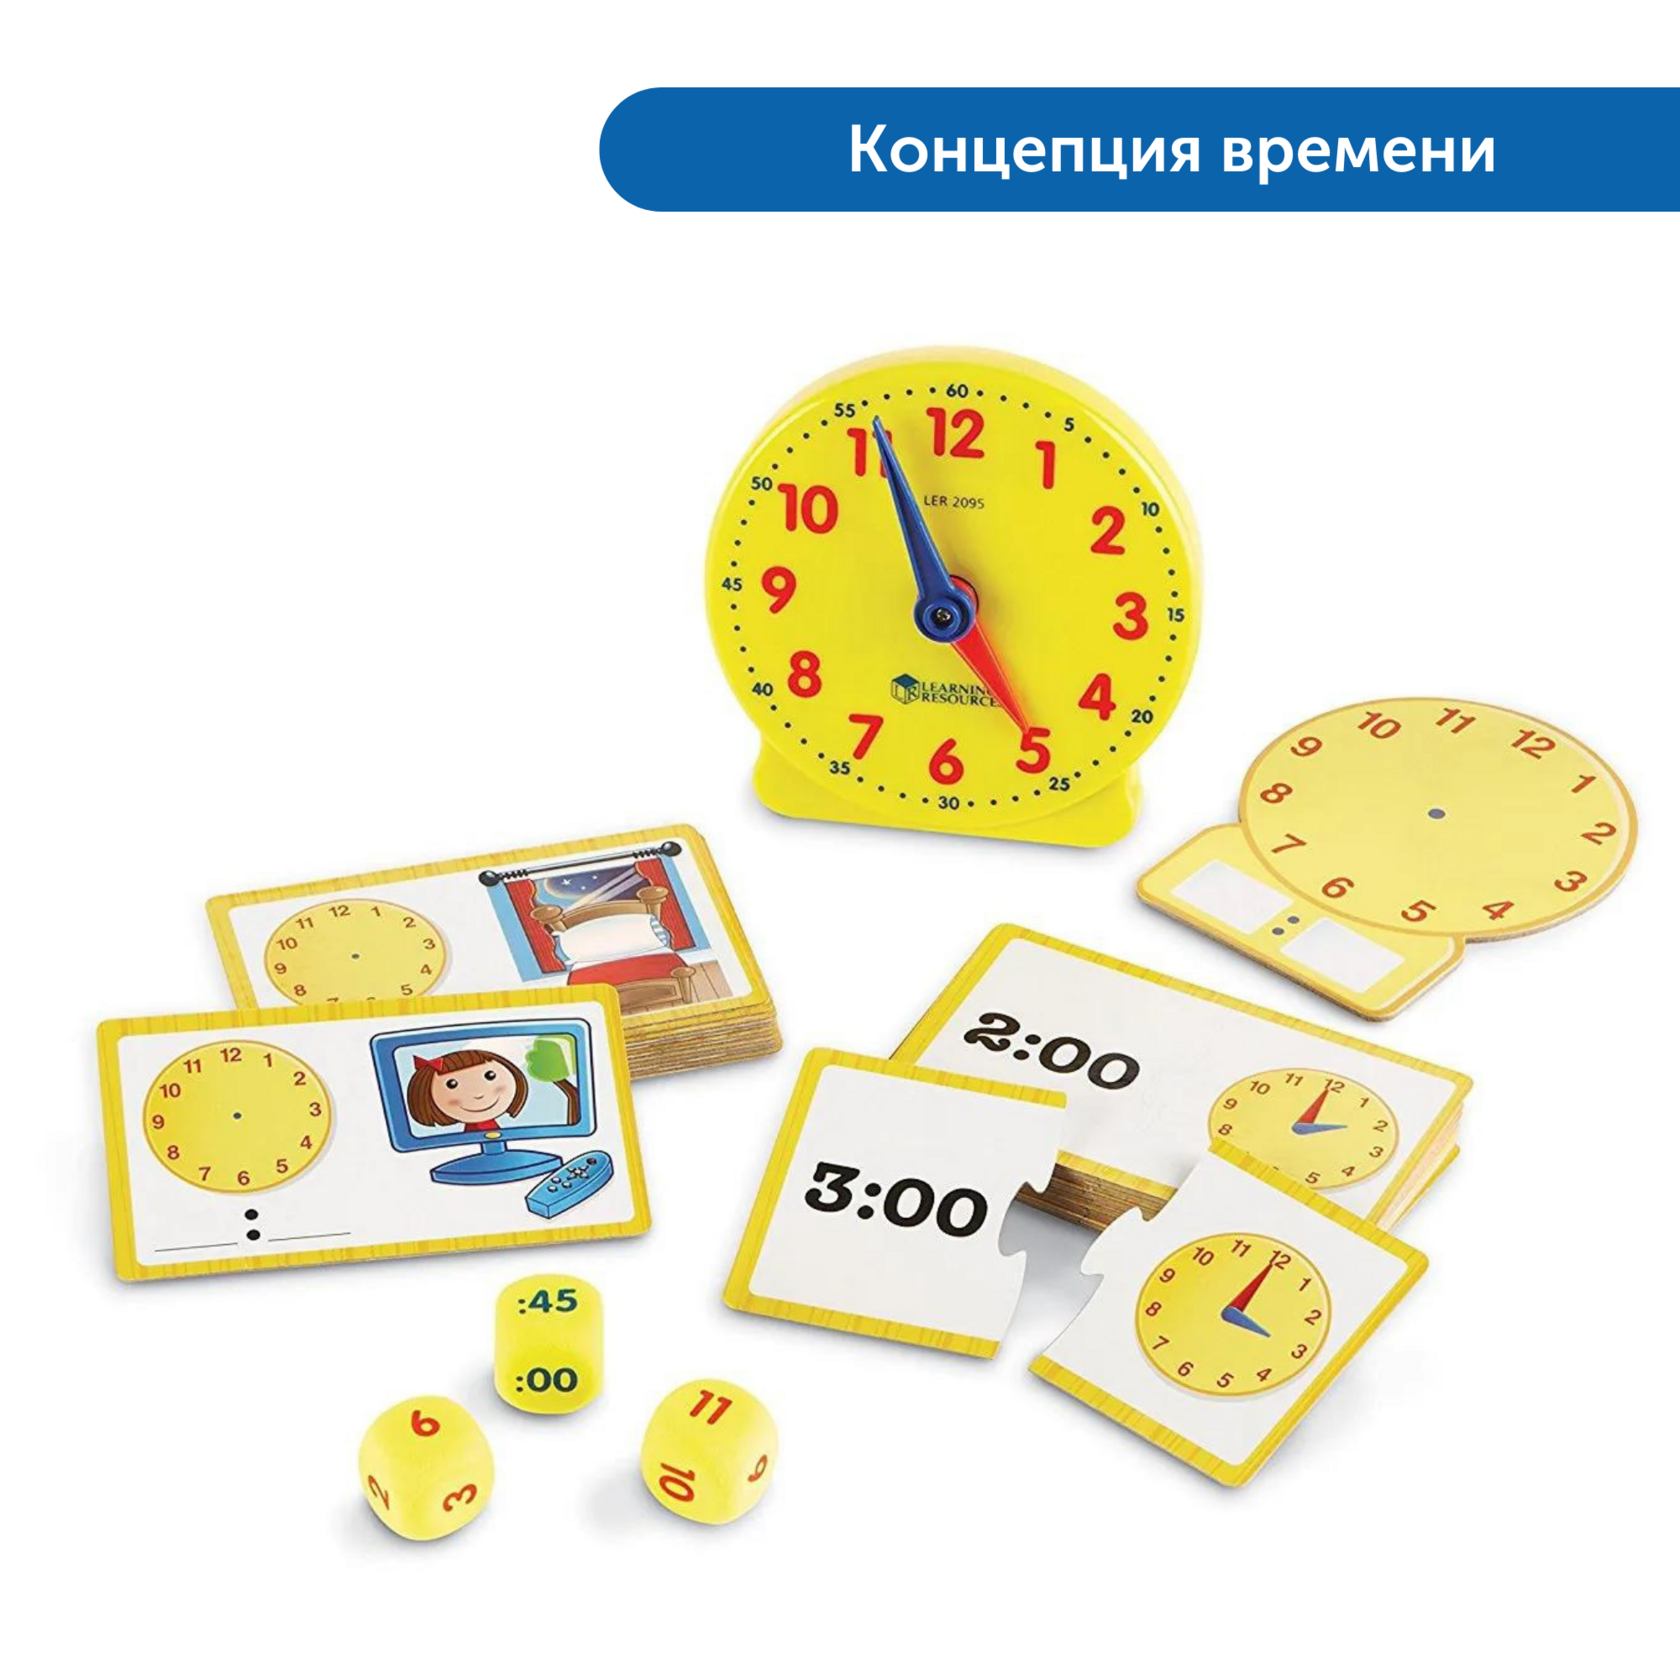 Игра с часами для детей. Обучающие часы. Игрушка для изучения часов. Часы игрушка для детей обучающие. Часы обучающие для детей.